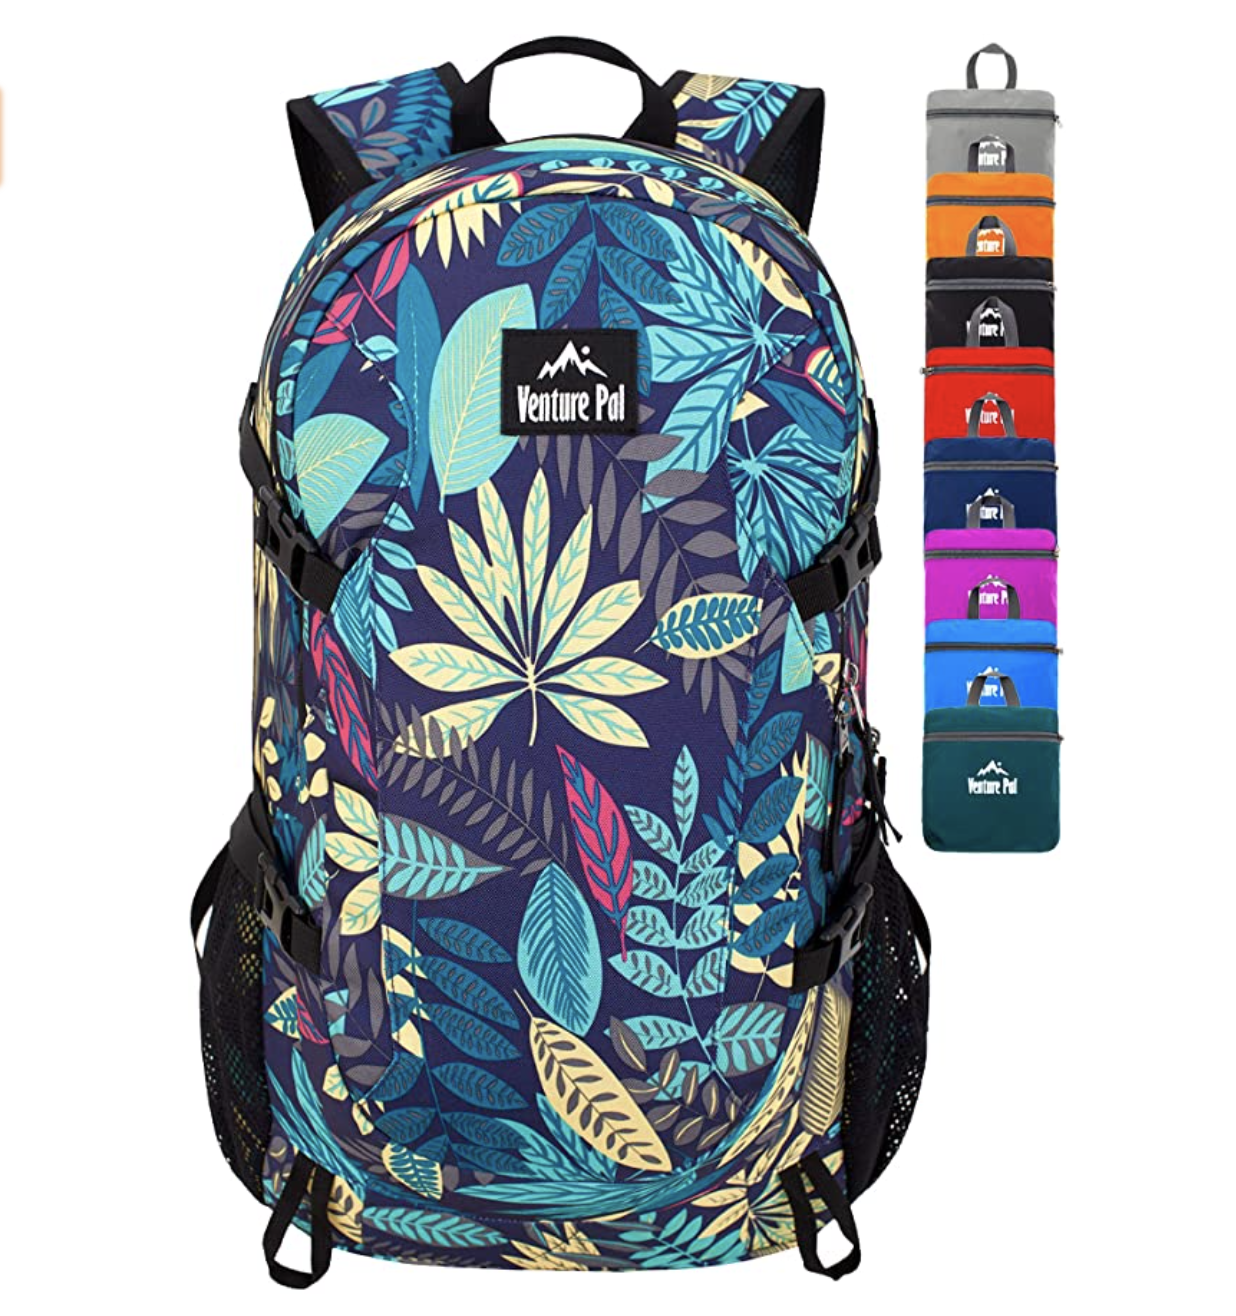 Venture Pal Hiking Gift For Women Nylon Multi-Pocket Backpack